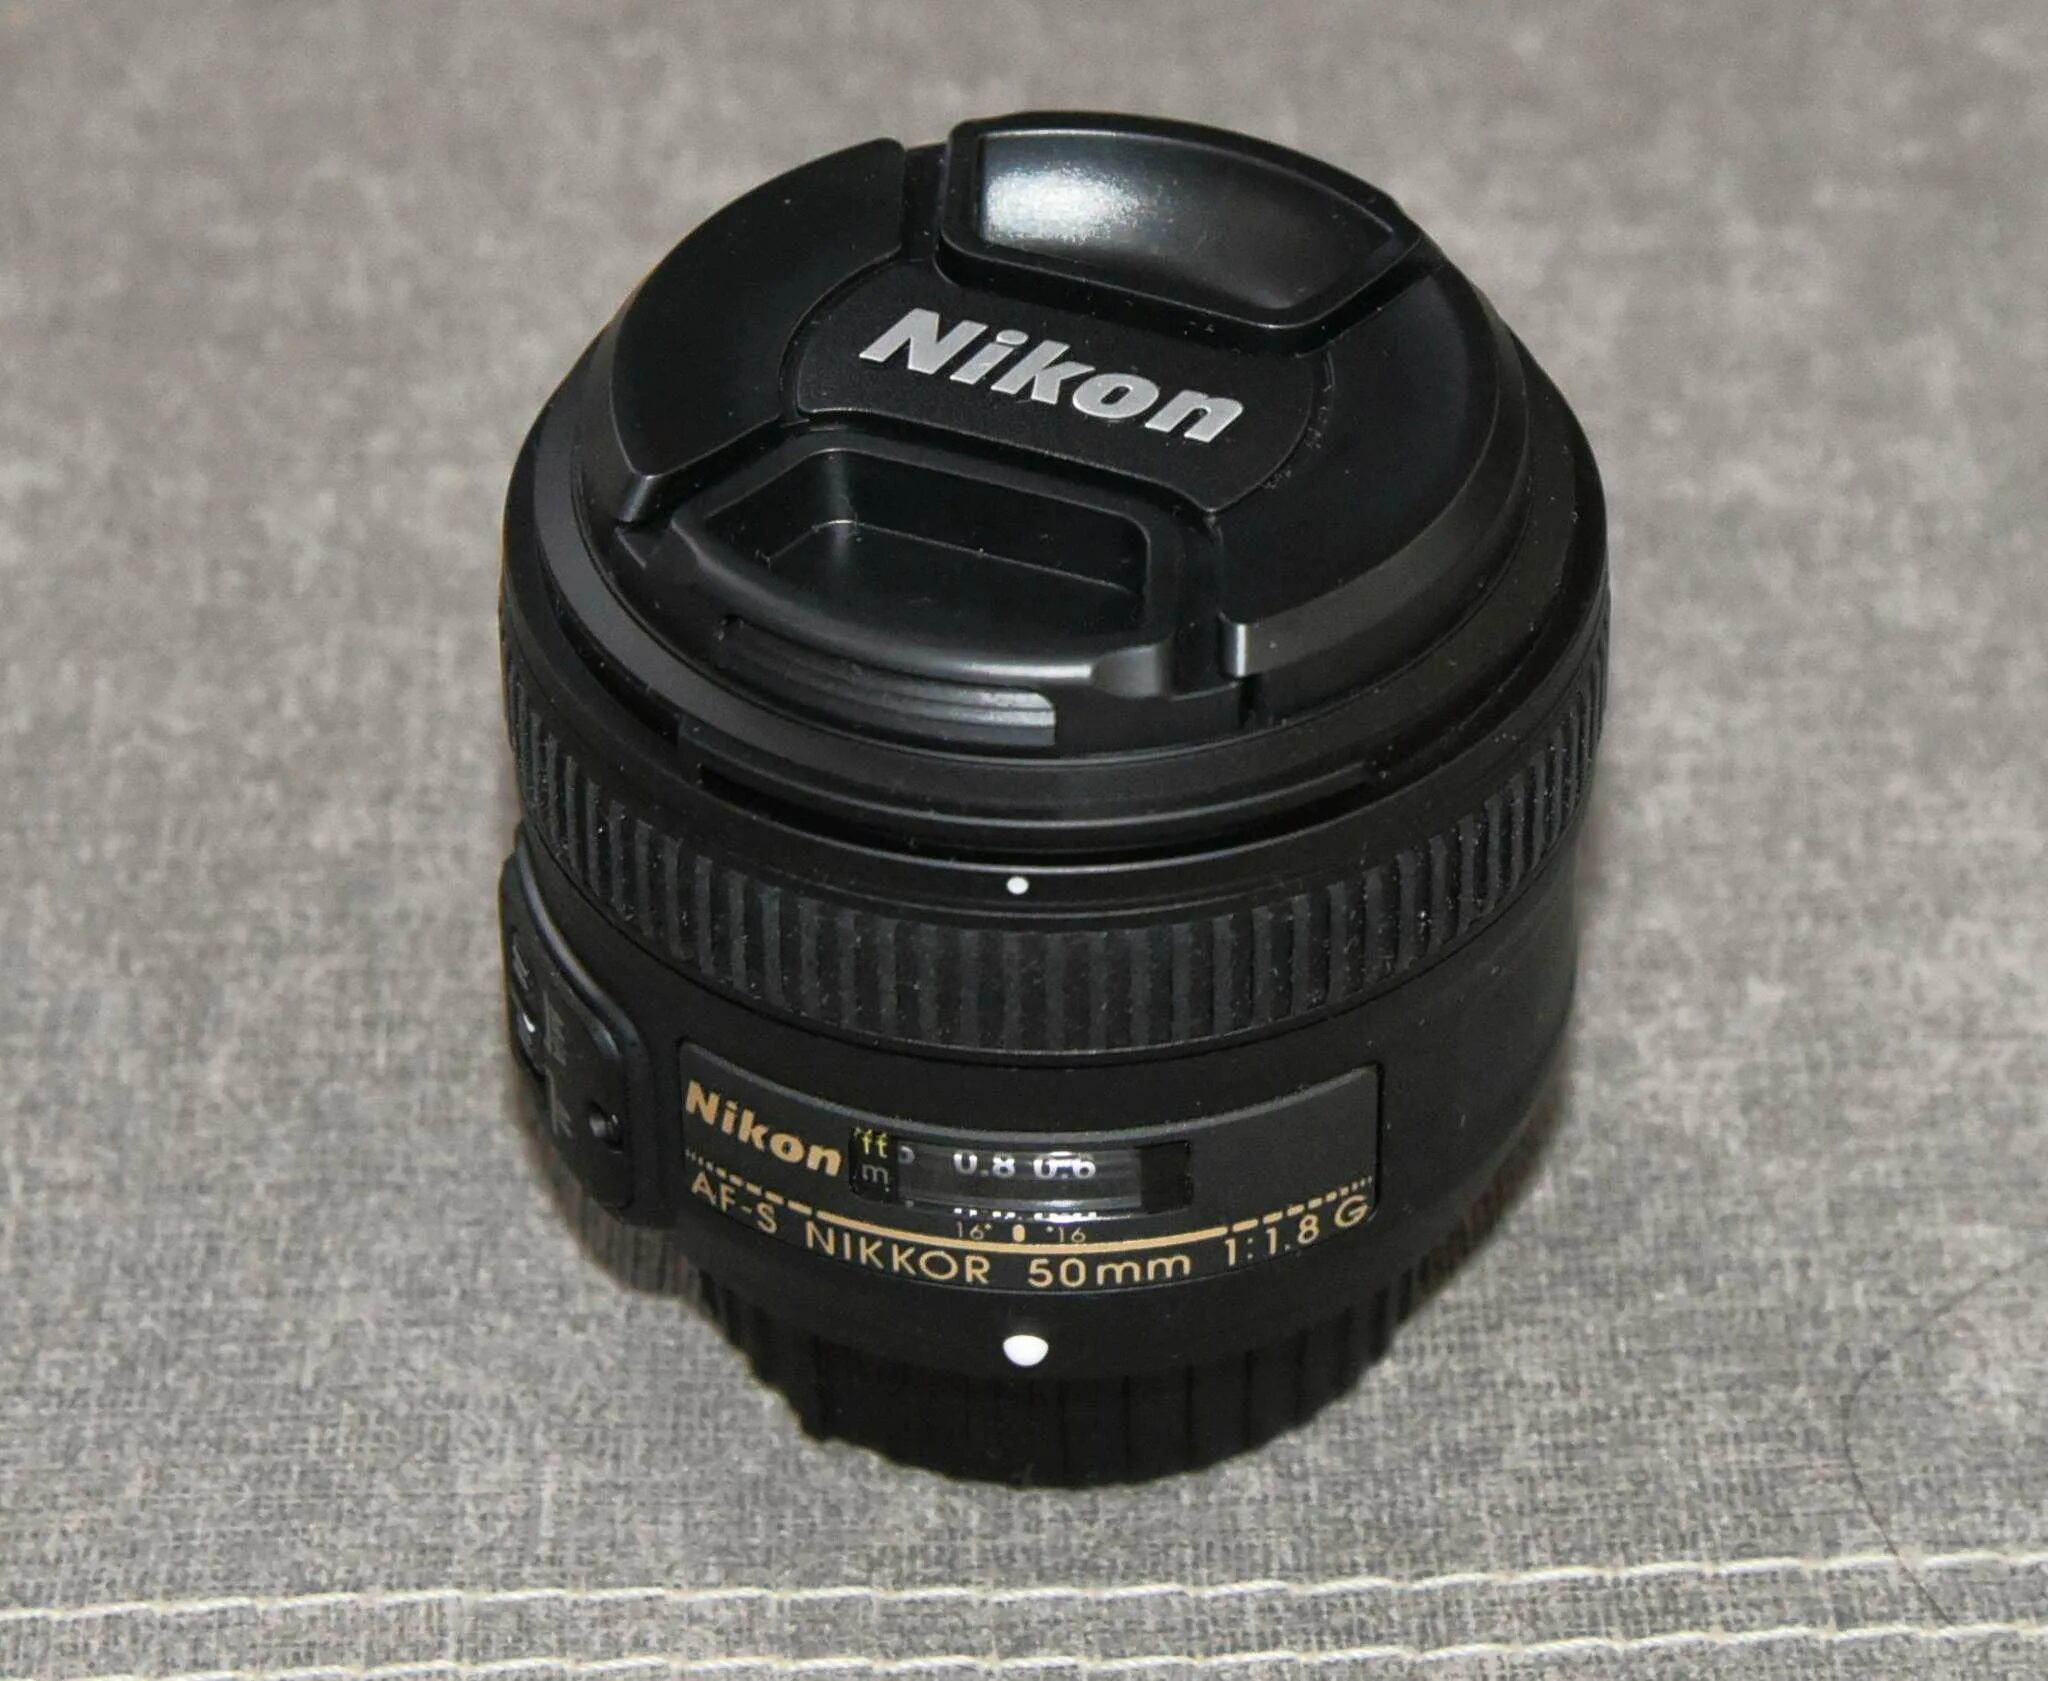 Nikkor 50mm g af s. Nikon af Nikkor 50mm 1 1.8d. Nikon af-s 50mm/1.8g. Nikon 50mm 1.8.